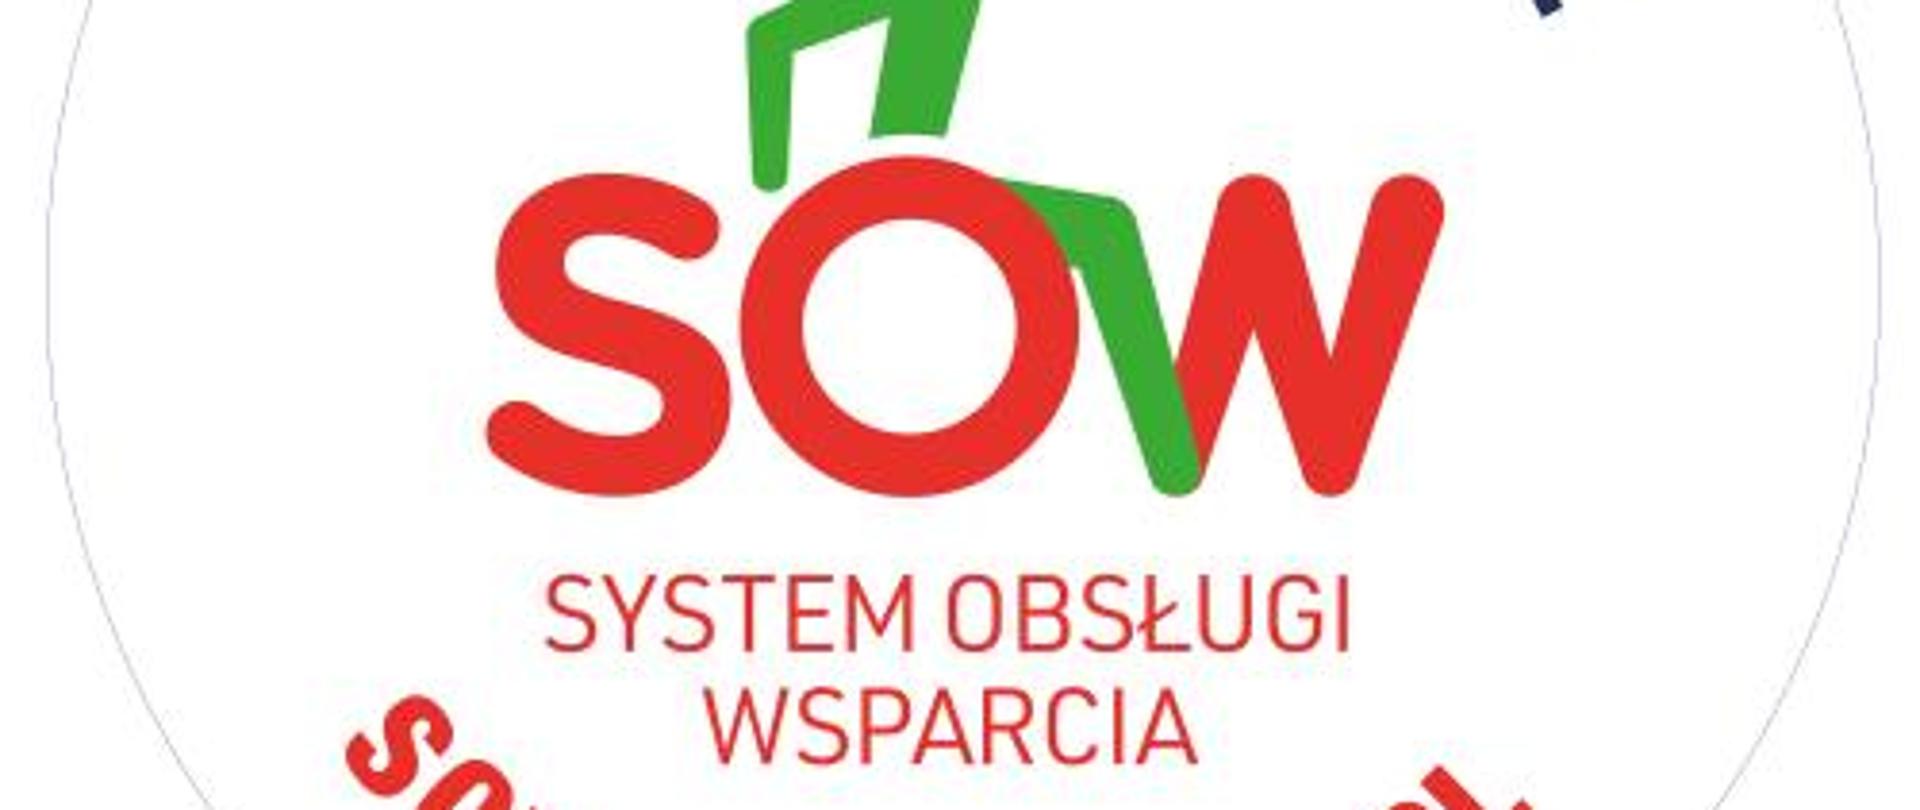 aktywny samorząd napis SWO, czyli system obsługi wsparcia na literze O siedzi ludzik, który reprezentuję osobę na wózku inwalidzkim